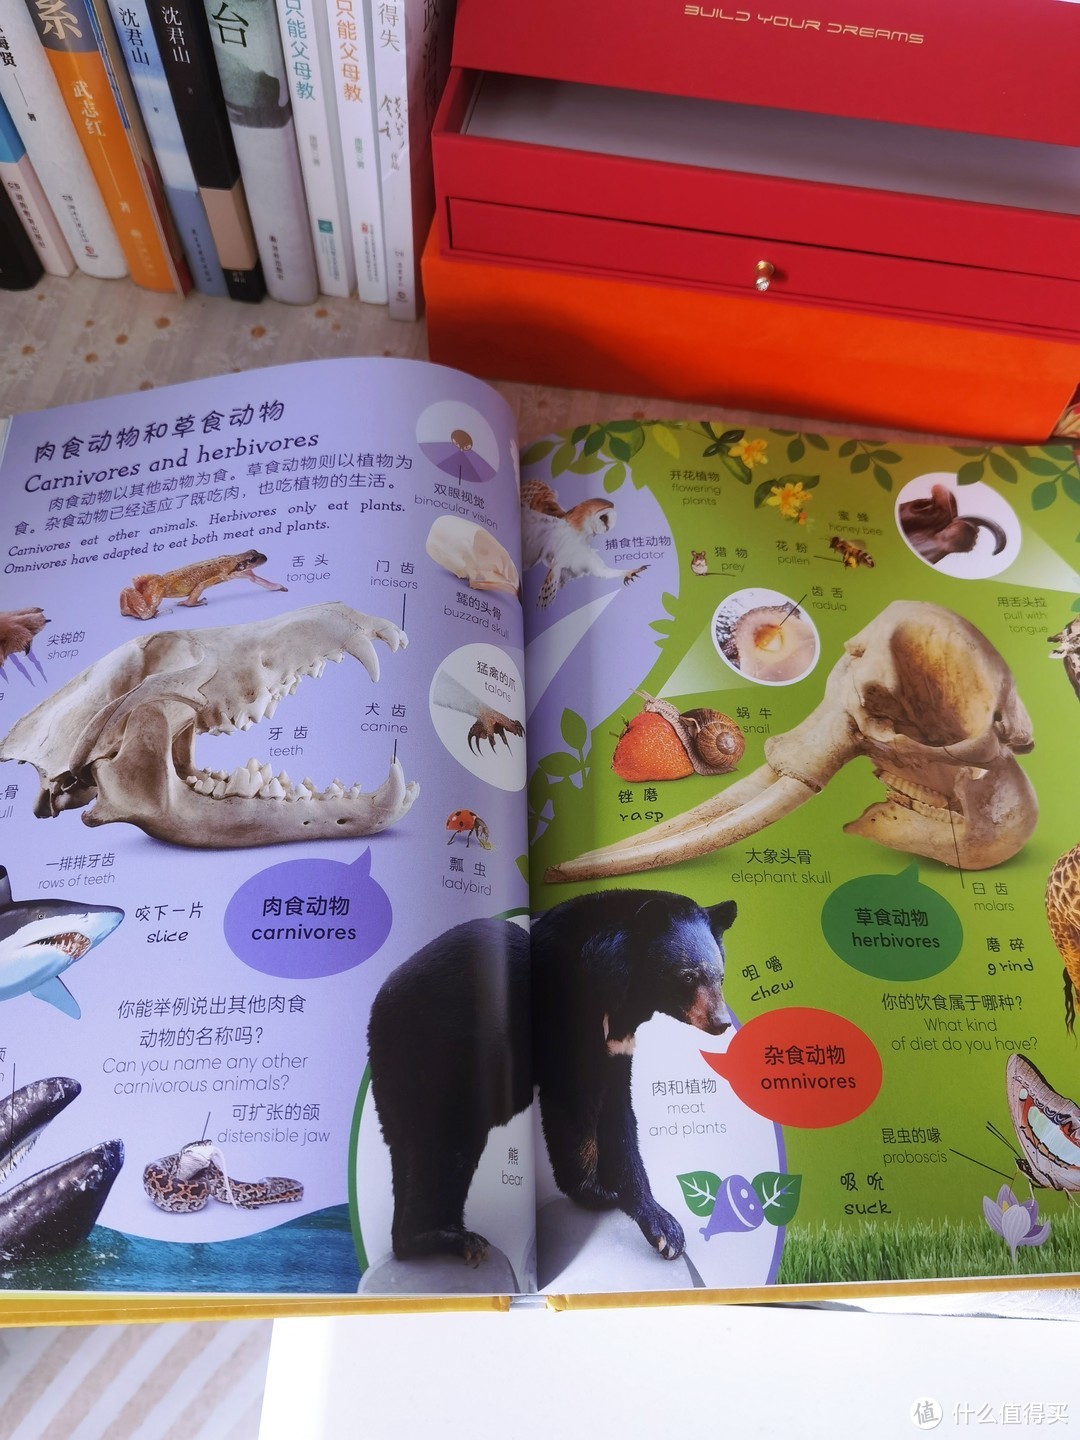 《DK动物双语词汇1000》：探索动物世界的双语之旅